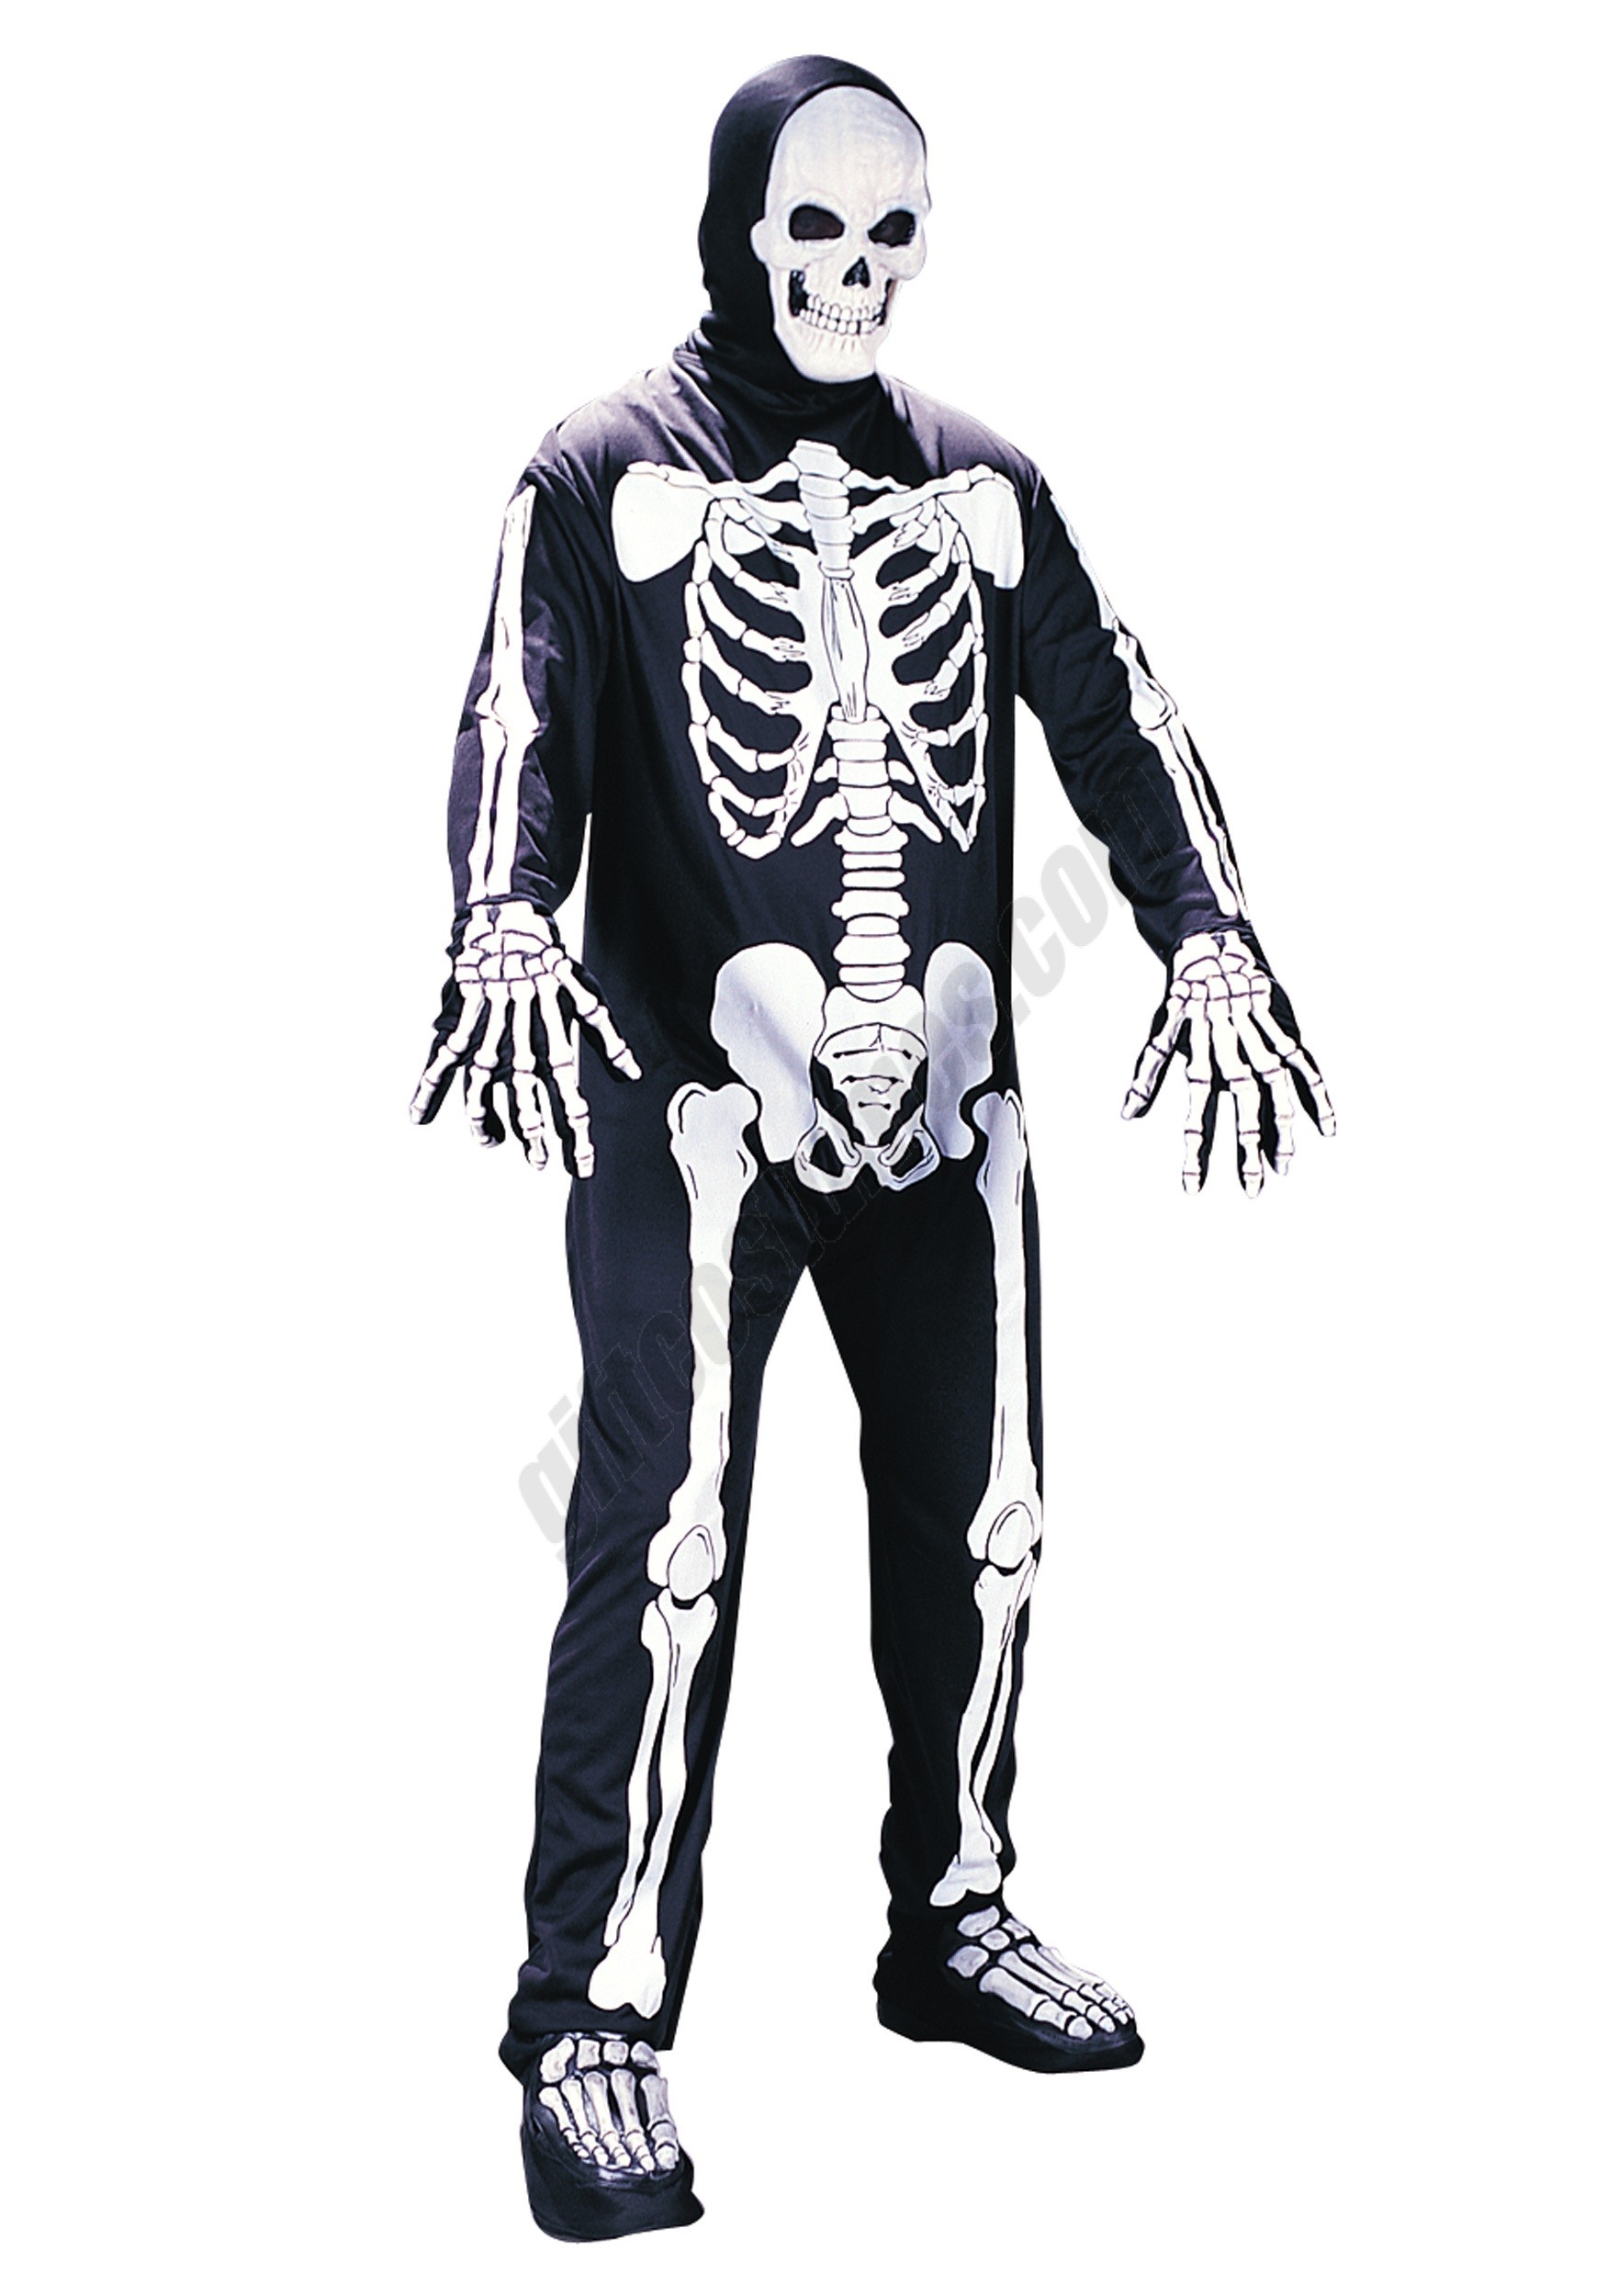 Adult Skeleton Jumpsuit Costume Promotions - Adult Skeleton Jumpsuit Costume Promotions